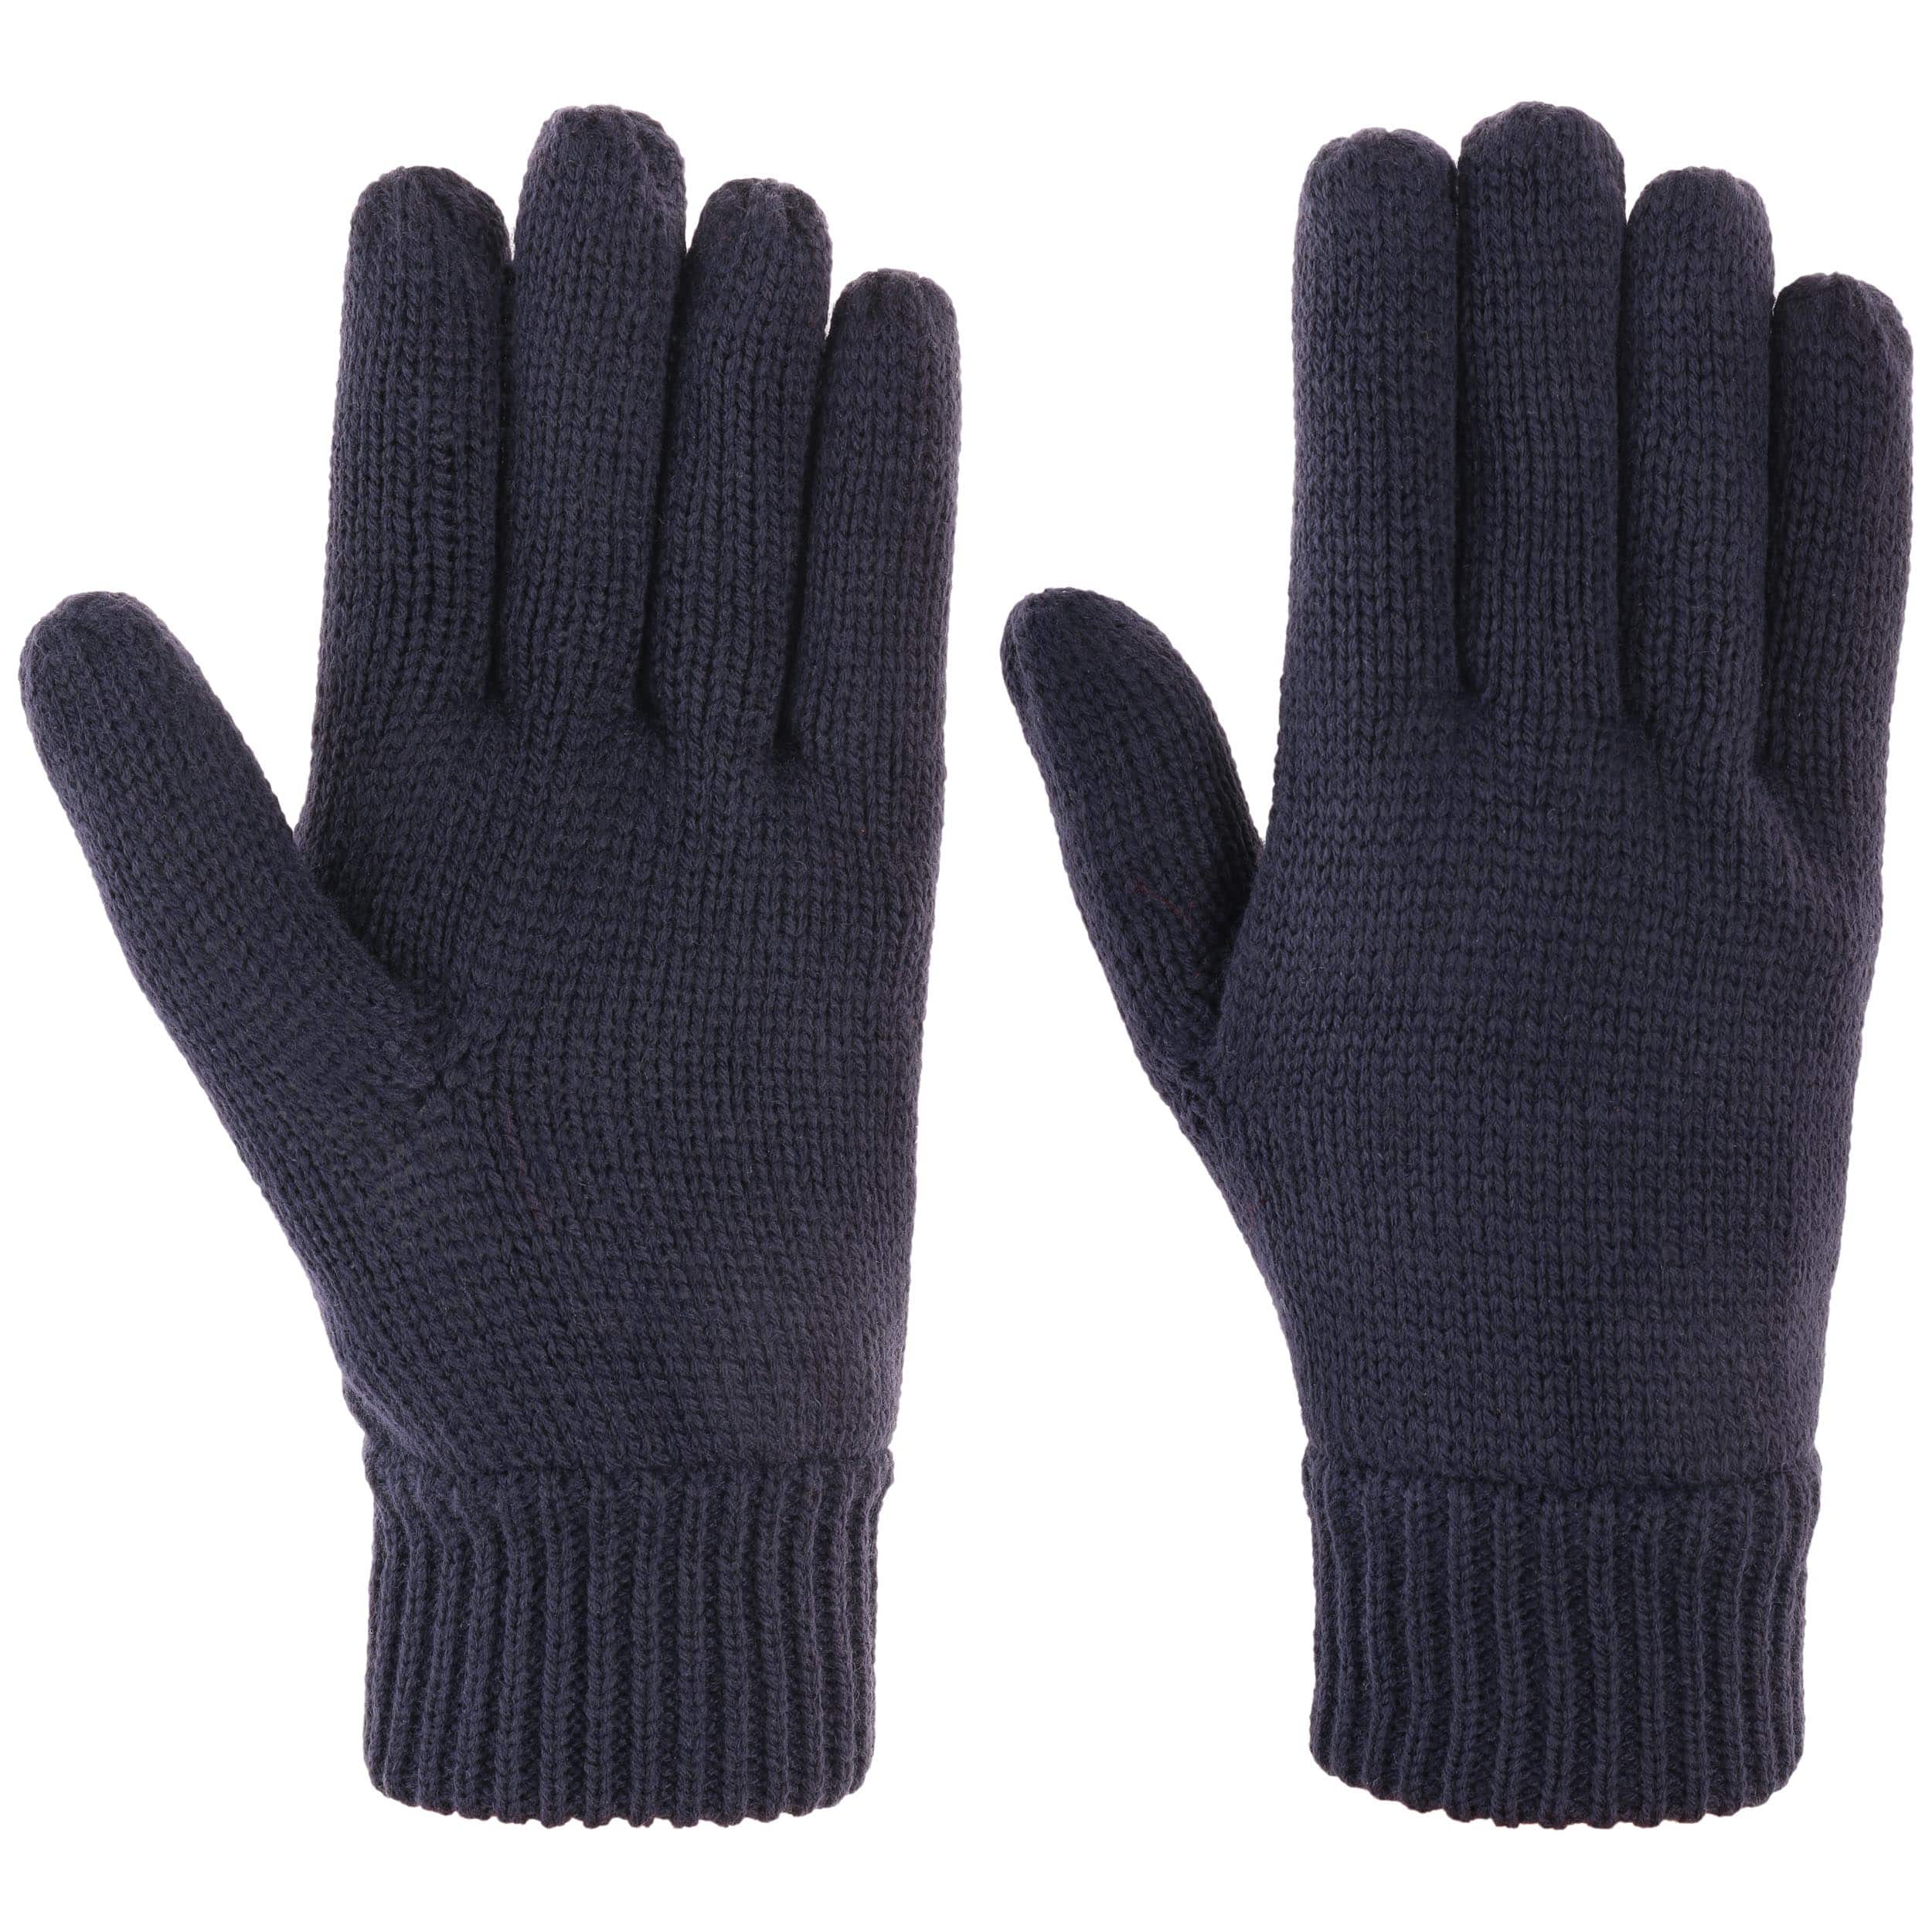 3M Strikkede Handsker by Lipodo - 149,00 kr